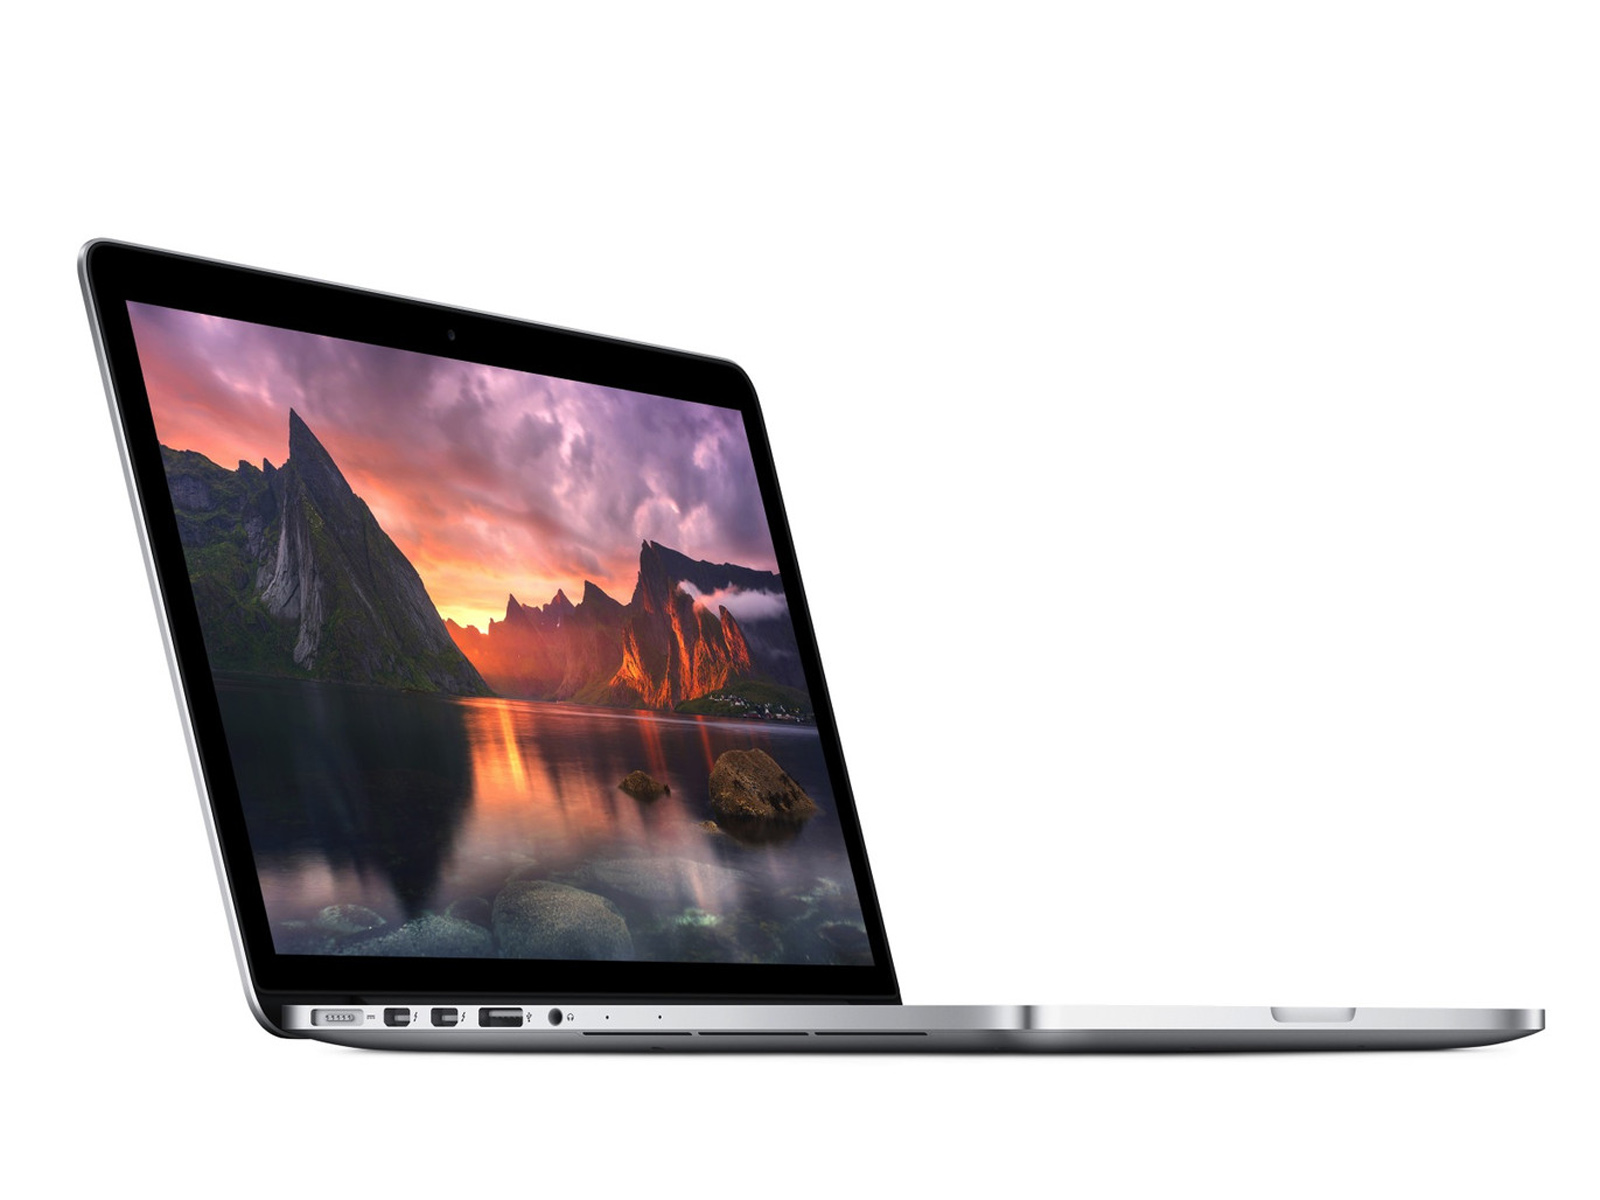 typist Soldaat gewelddadig MacBook Pro 15′ RETINA i7 2,5GHz 16GB RAM AMD Radeon R9 2GB 500GB SSD –  AppleSupport.me – "Alles wat buiten fabrieksgarantie valt"